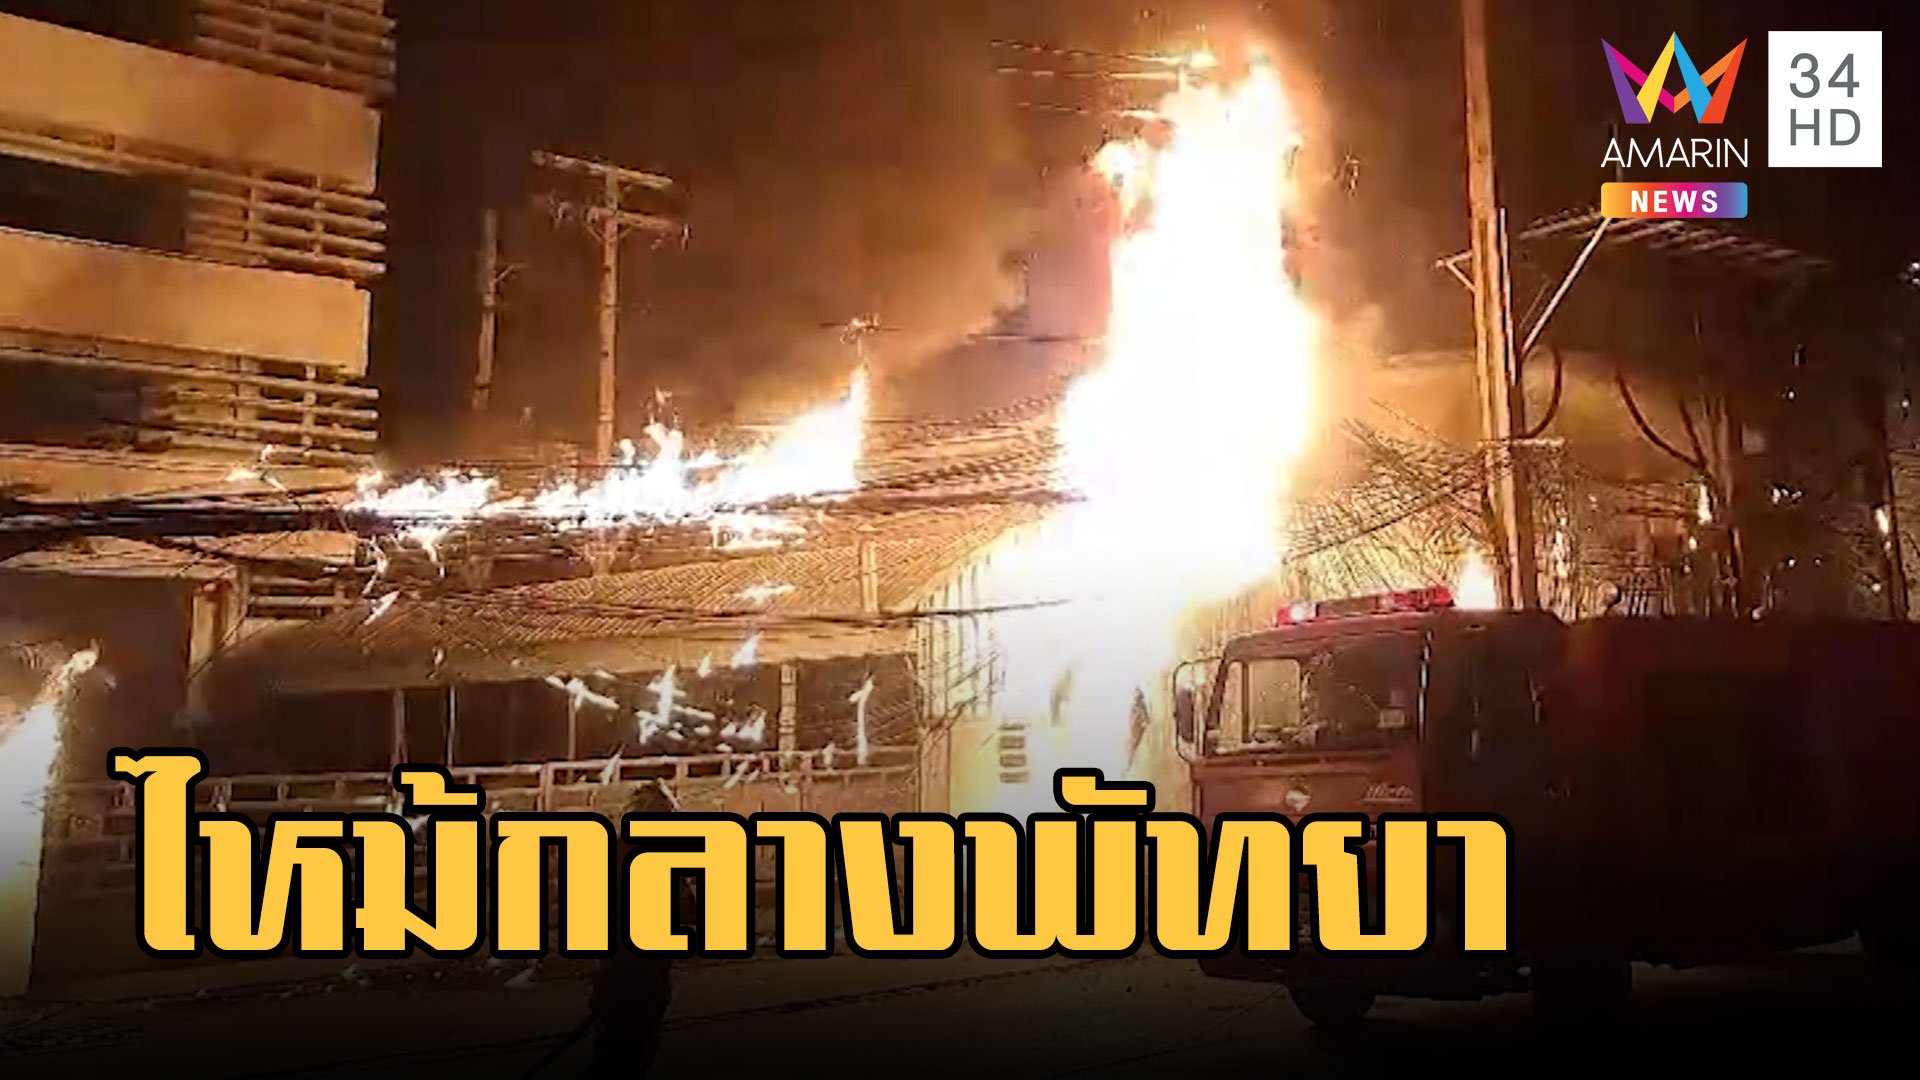 ไฟไหม้สายสื่อสาร กลางเมืองพัทยา รถติดรถดับเพลิงถึงช้า | ข่าวอรุณอมรินทร์ | 16 ก.พ. 66 | AMARIN TVHD34